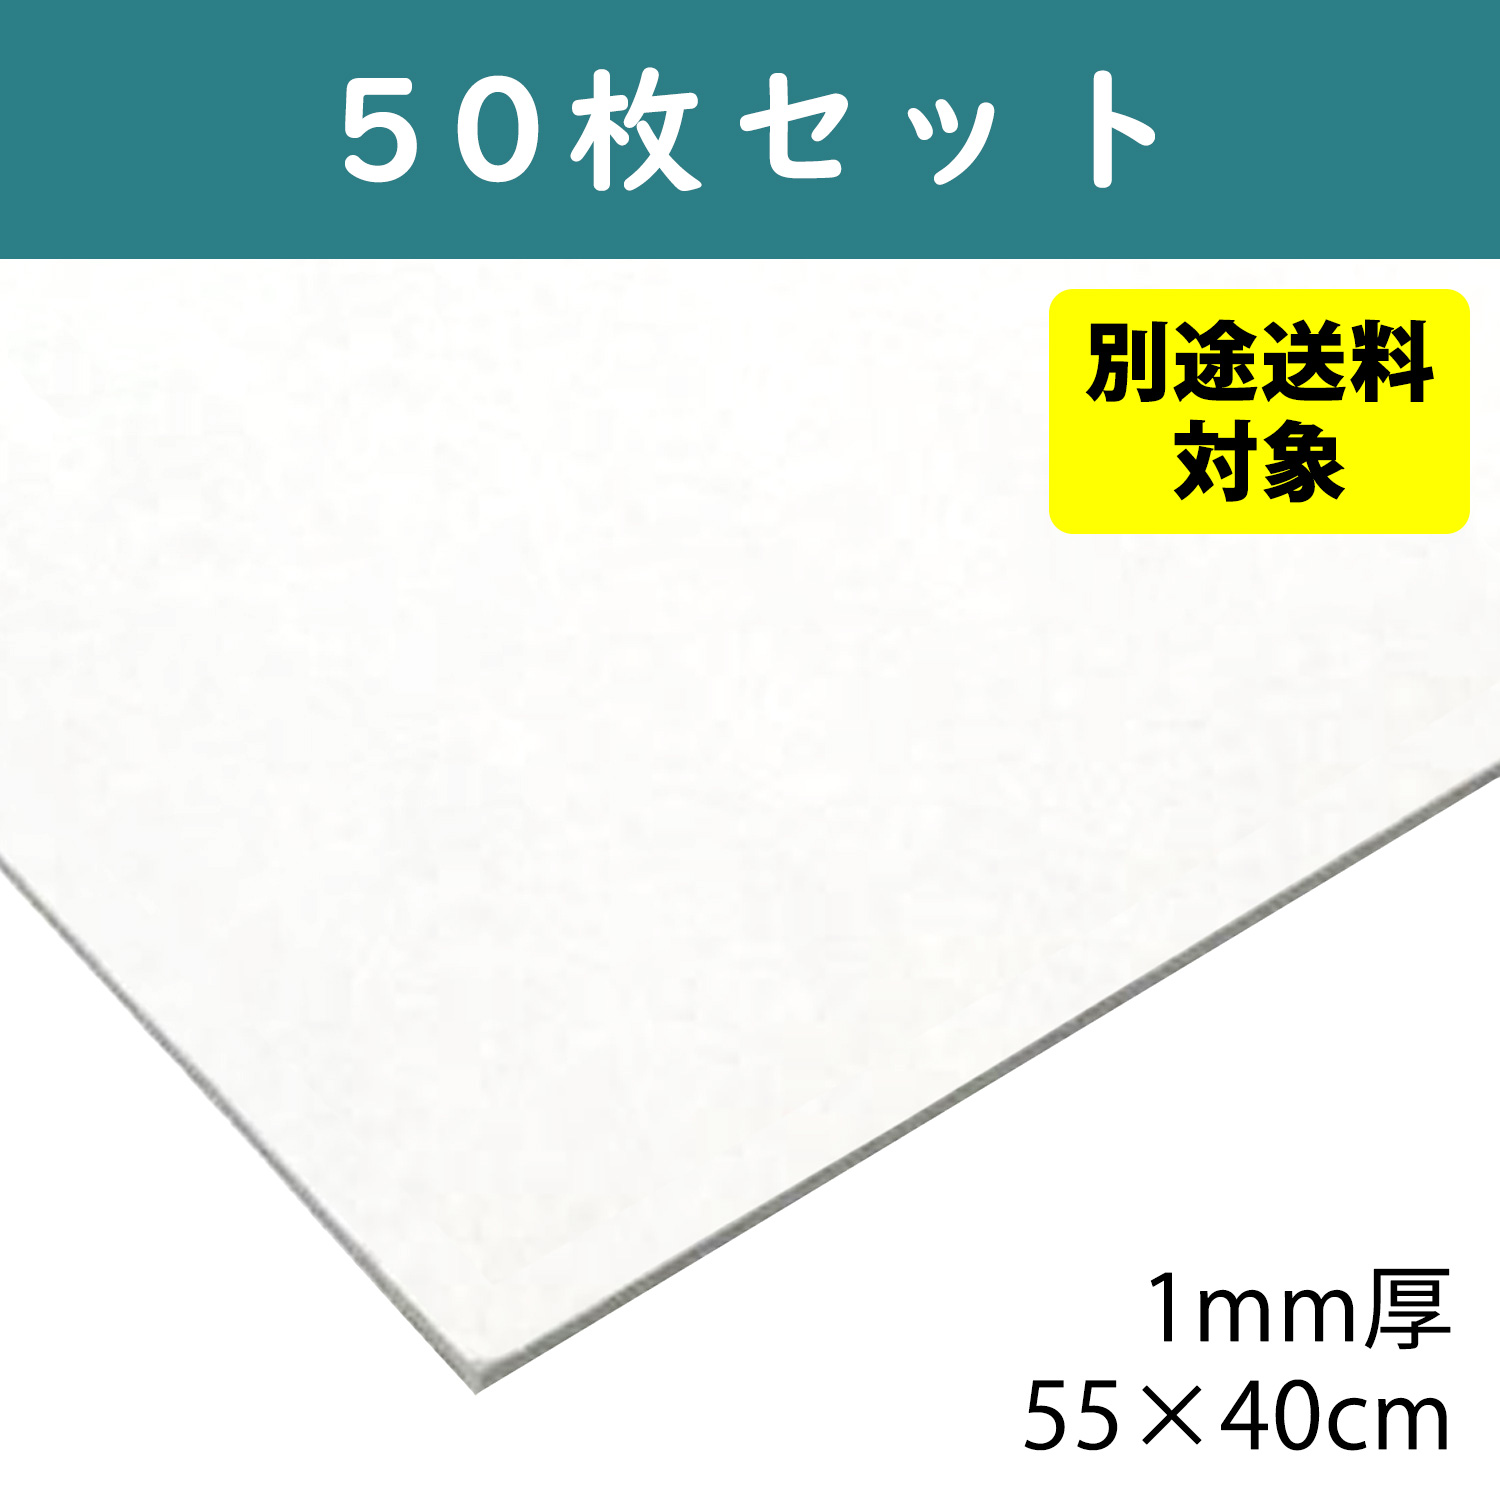 【+別途送料対象商品】CTN11-50 白厚紙 1mm厚 55×40cm 50枚入 (袋)